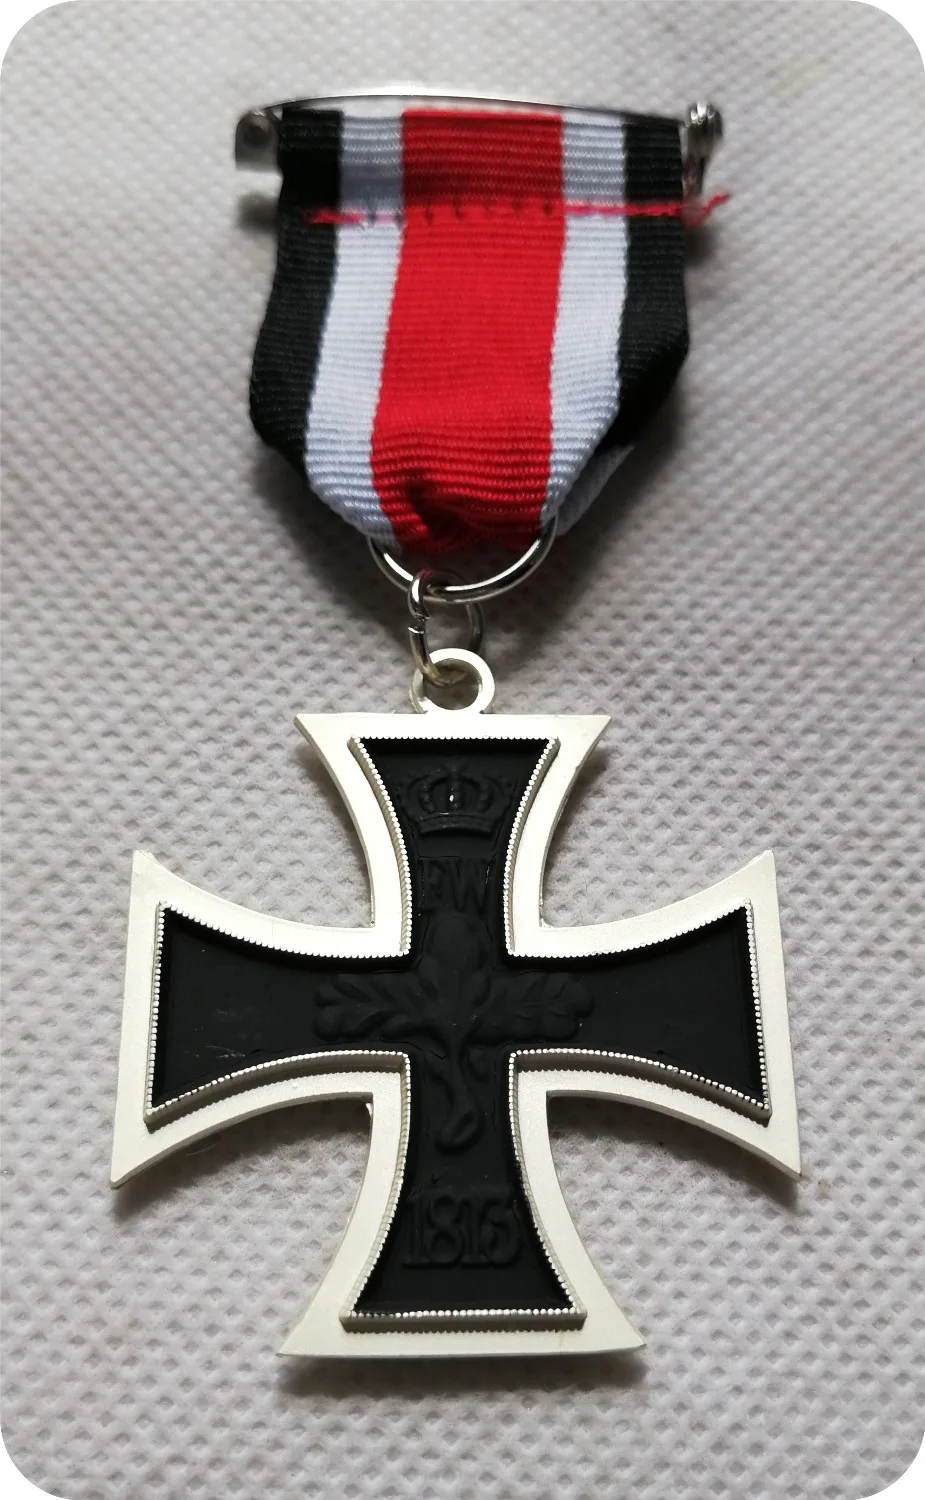 Новая Германия 1870 Железный крест 2-го класса франко-прусская война 1870 Железный крест EK2 Пруссия военная медаль